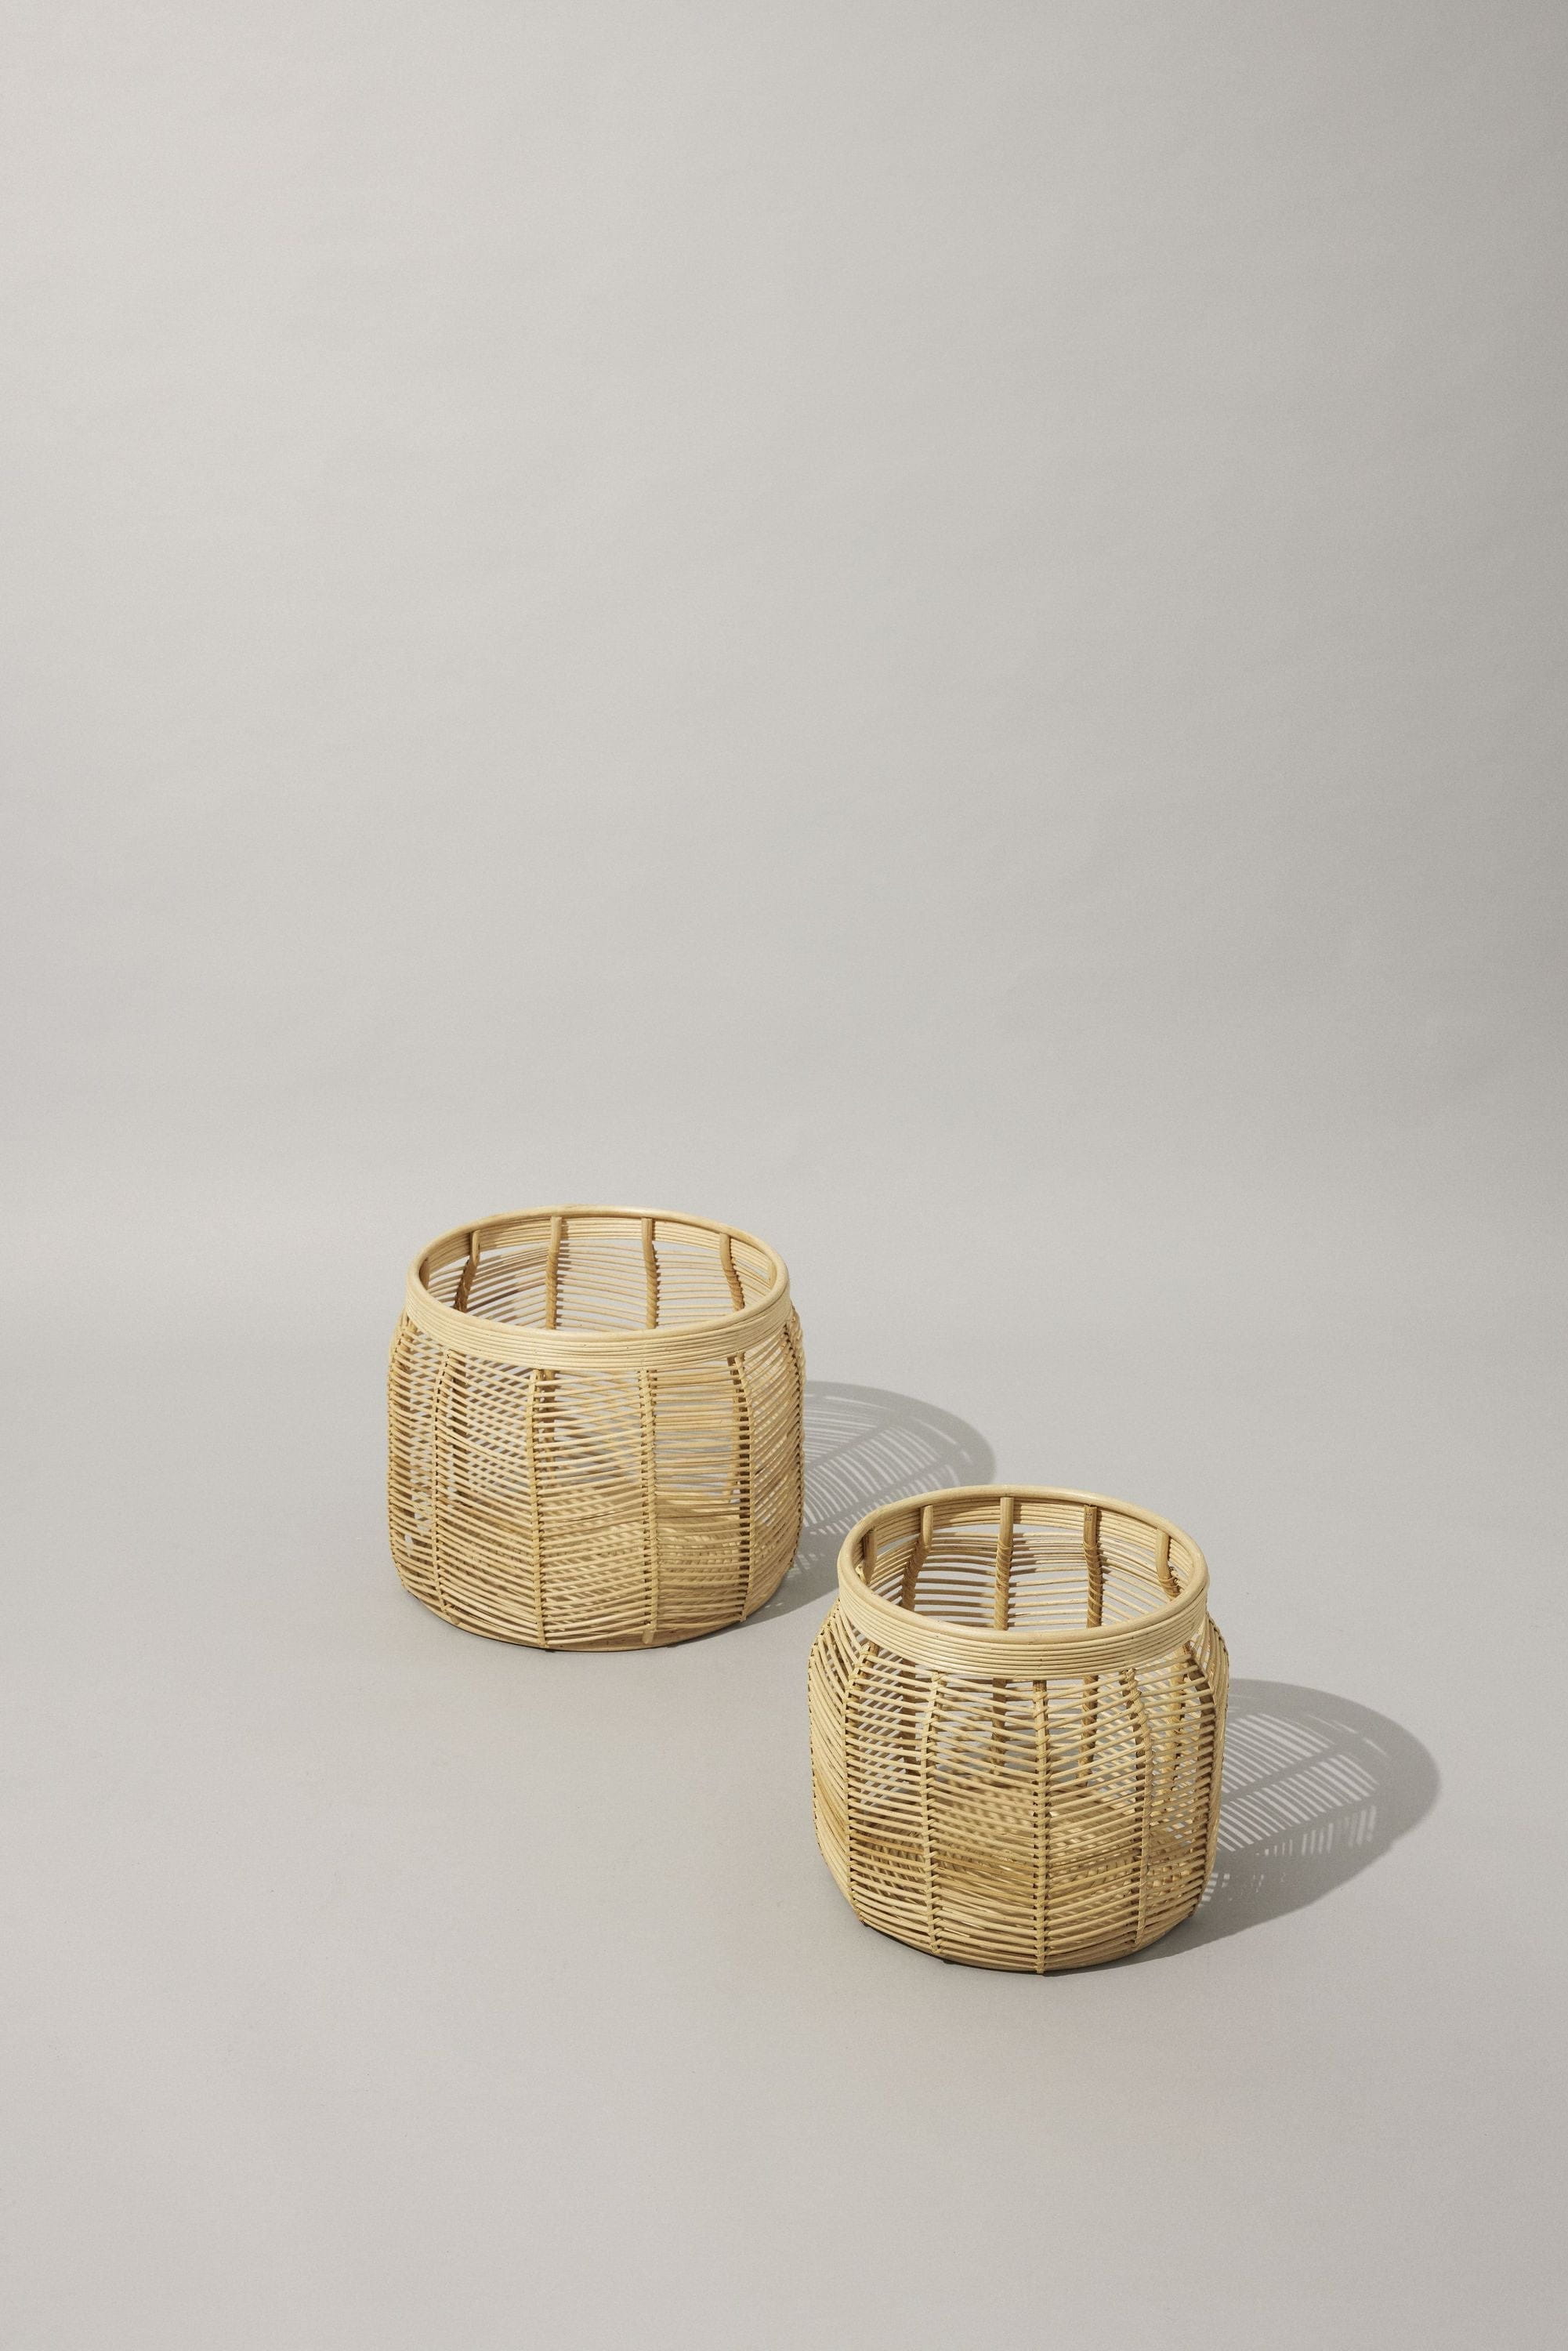 Hübsch Luna Basket Nature Set Of 2